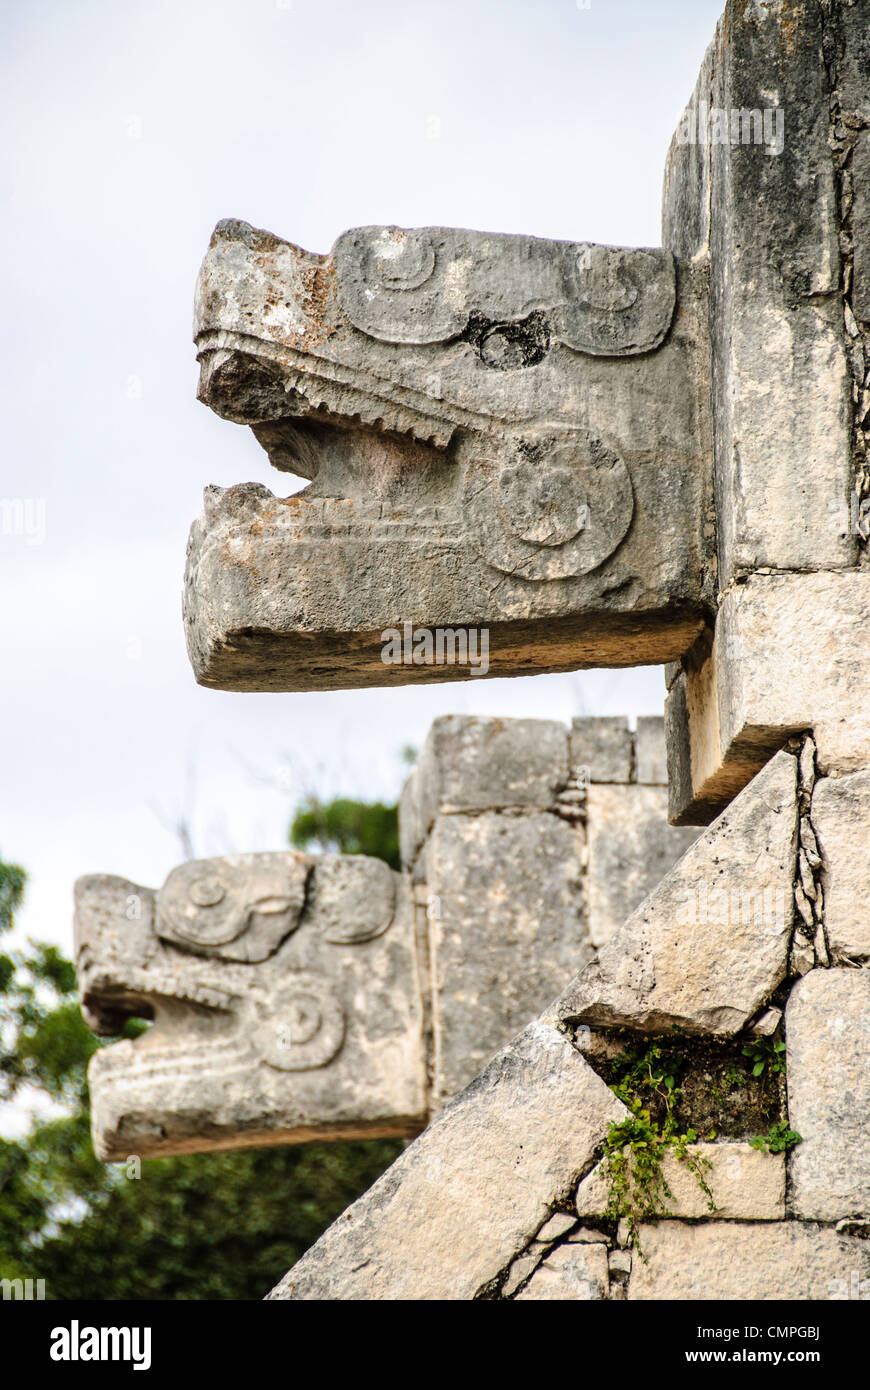 CHICHEN ITZA, Mexique - têtes de jaguar sculpté ornant les bâtiments à Chichen Itza, au Mexique. Banque D'Images